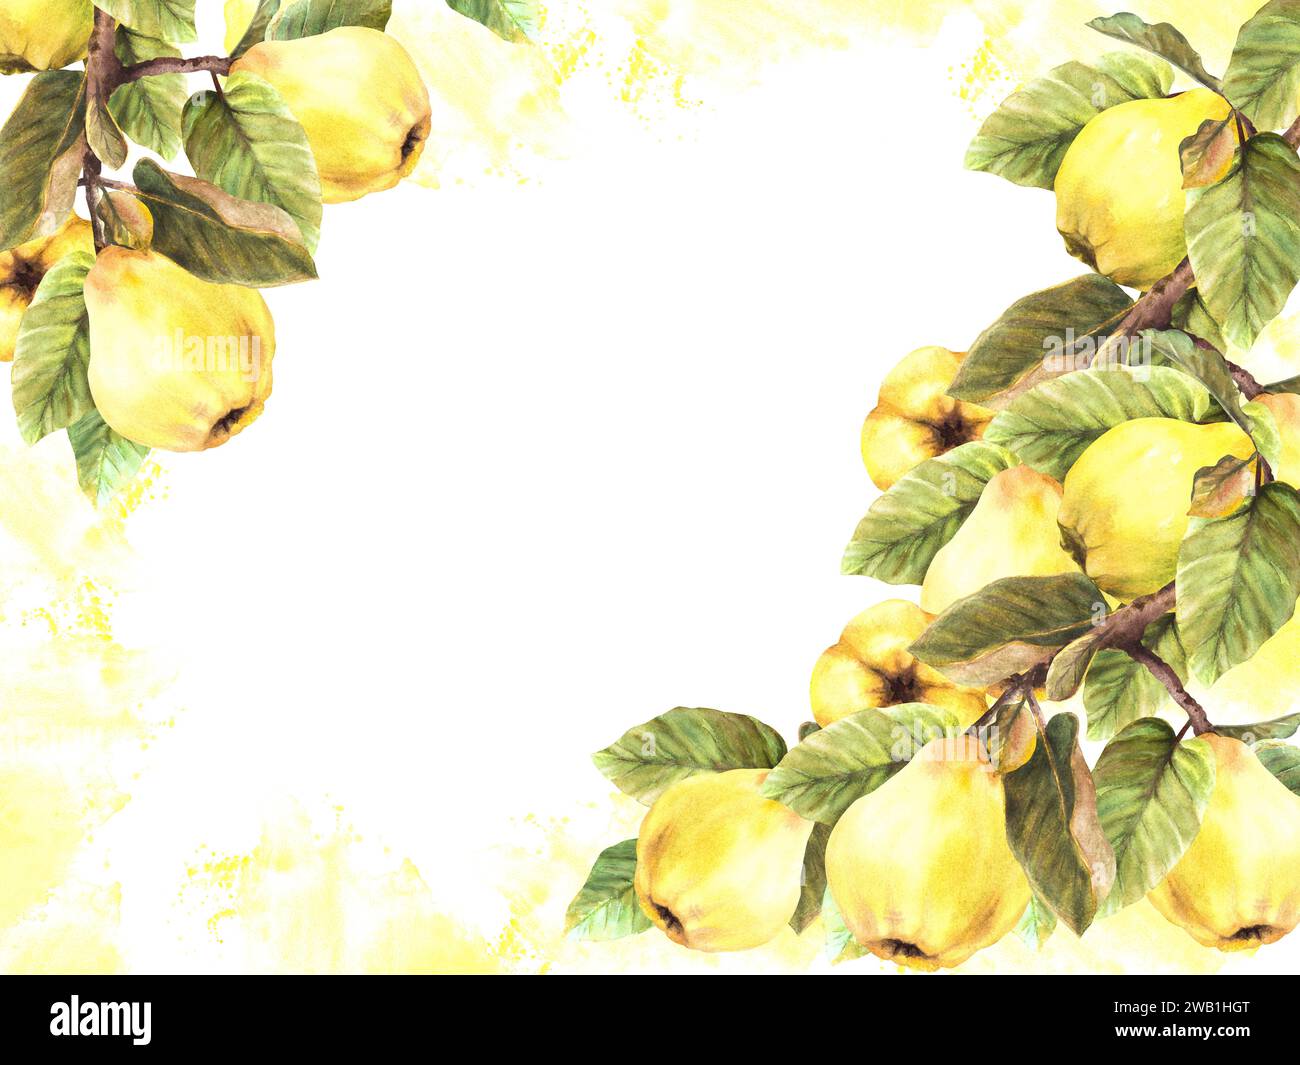 Handgemaltes Aquarellbanner. Zweige mit gelb reifer, saftiger Quitte ganze Früchte und Blätter mit Flecken und Spritzern. Abbildung der Clipart-Vorlage Stockfoto